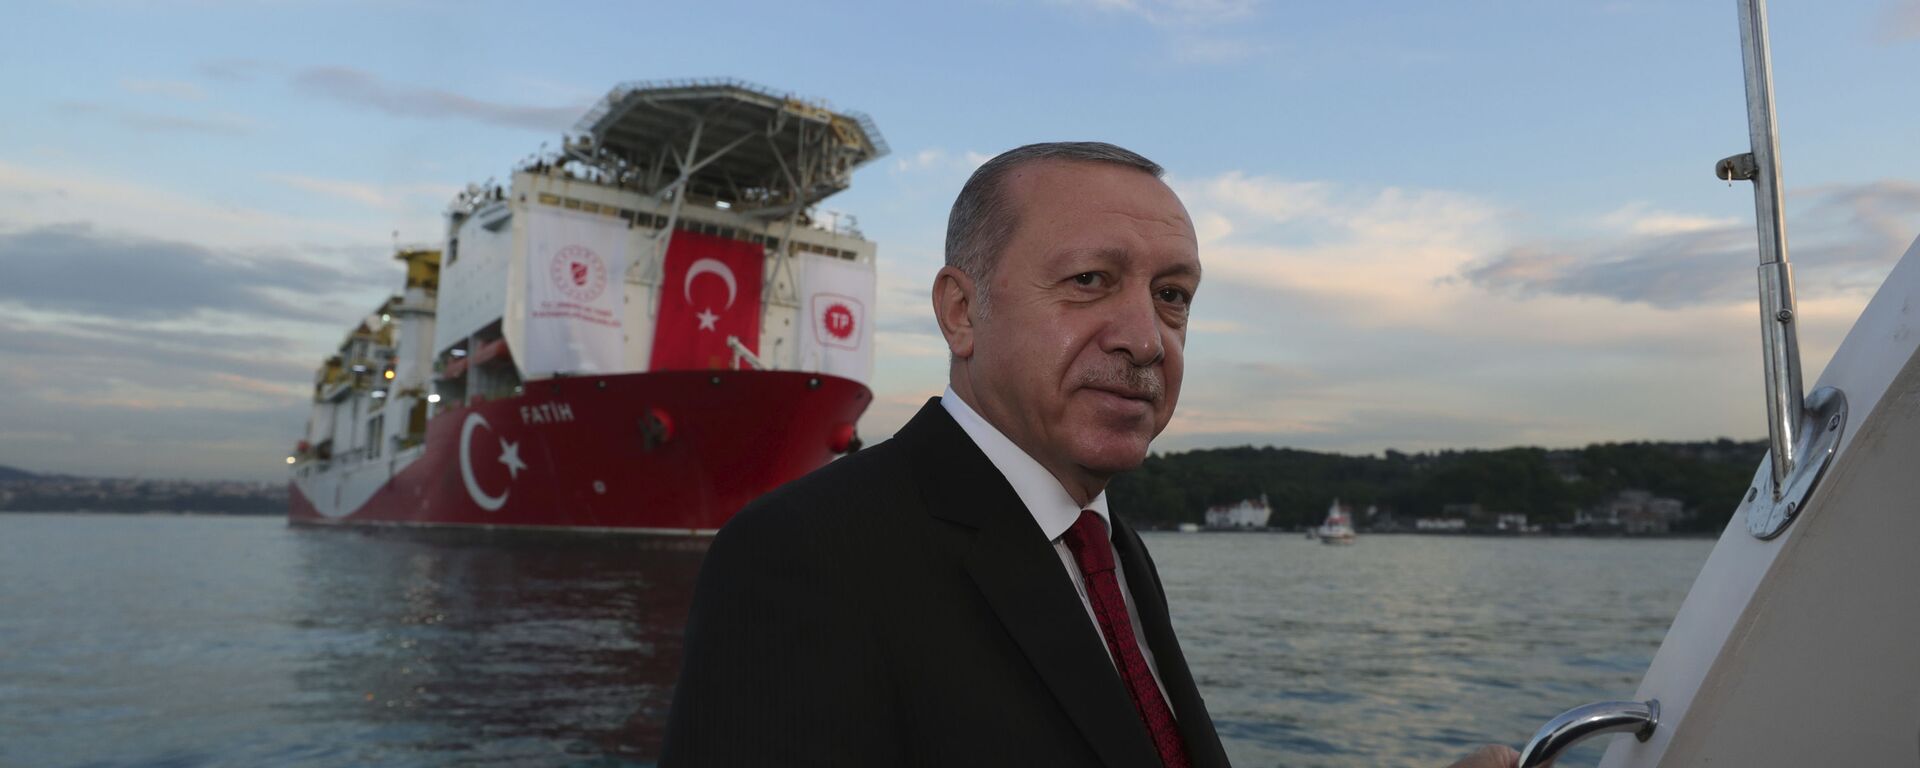 Президент Турции Реджеп Тайип Эрдоган на фоне турецкого корабля «Фатих» (29 мая 2020). Стамбул  - Sputnik Армения, 1920, 26.06.2021